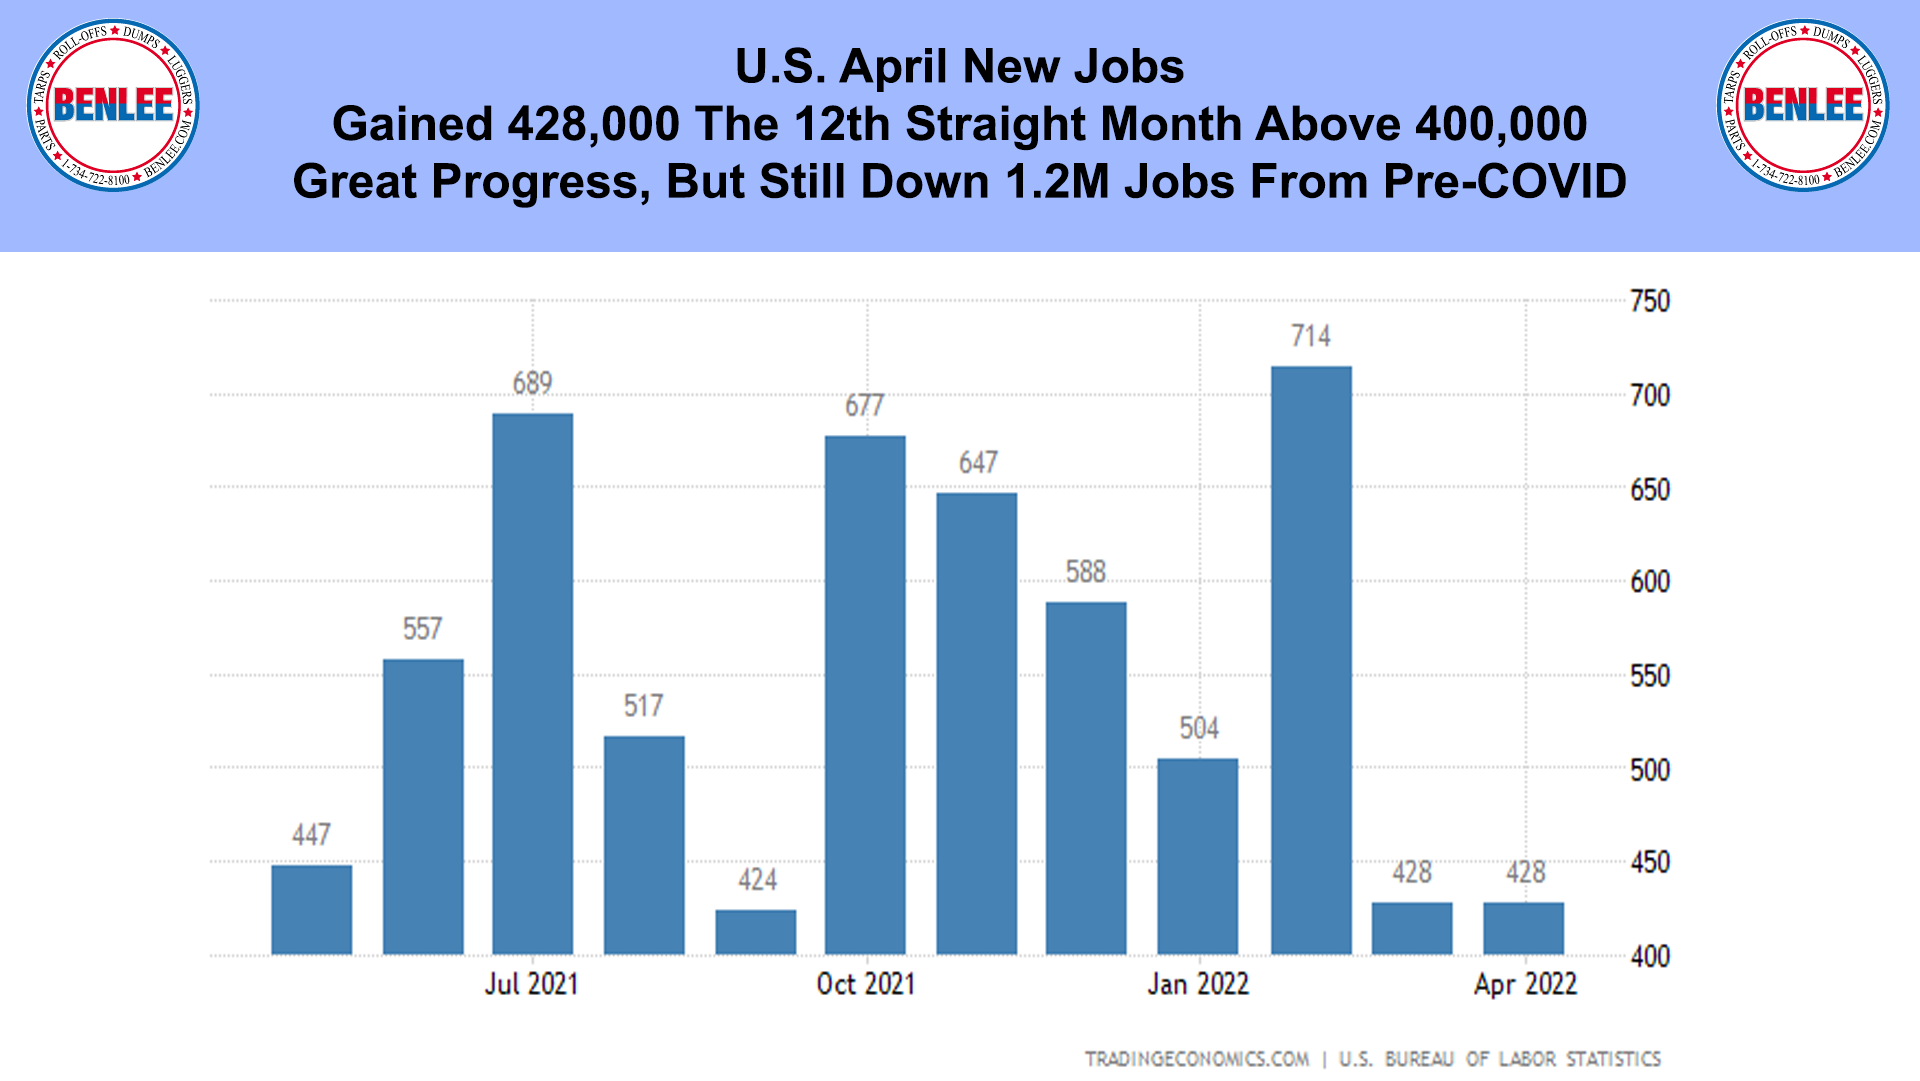 U.S. April New Jobs